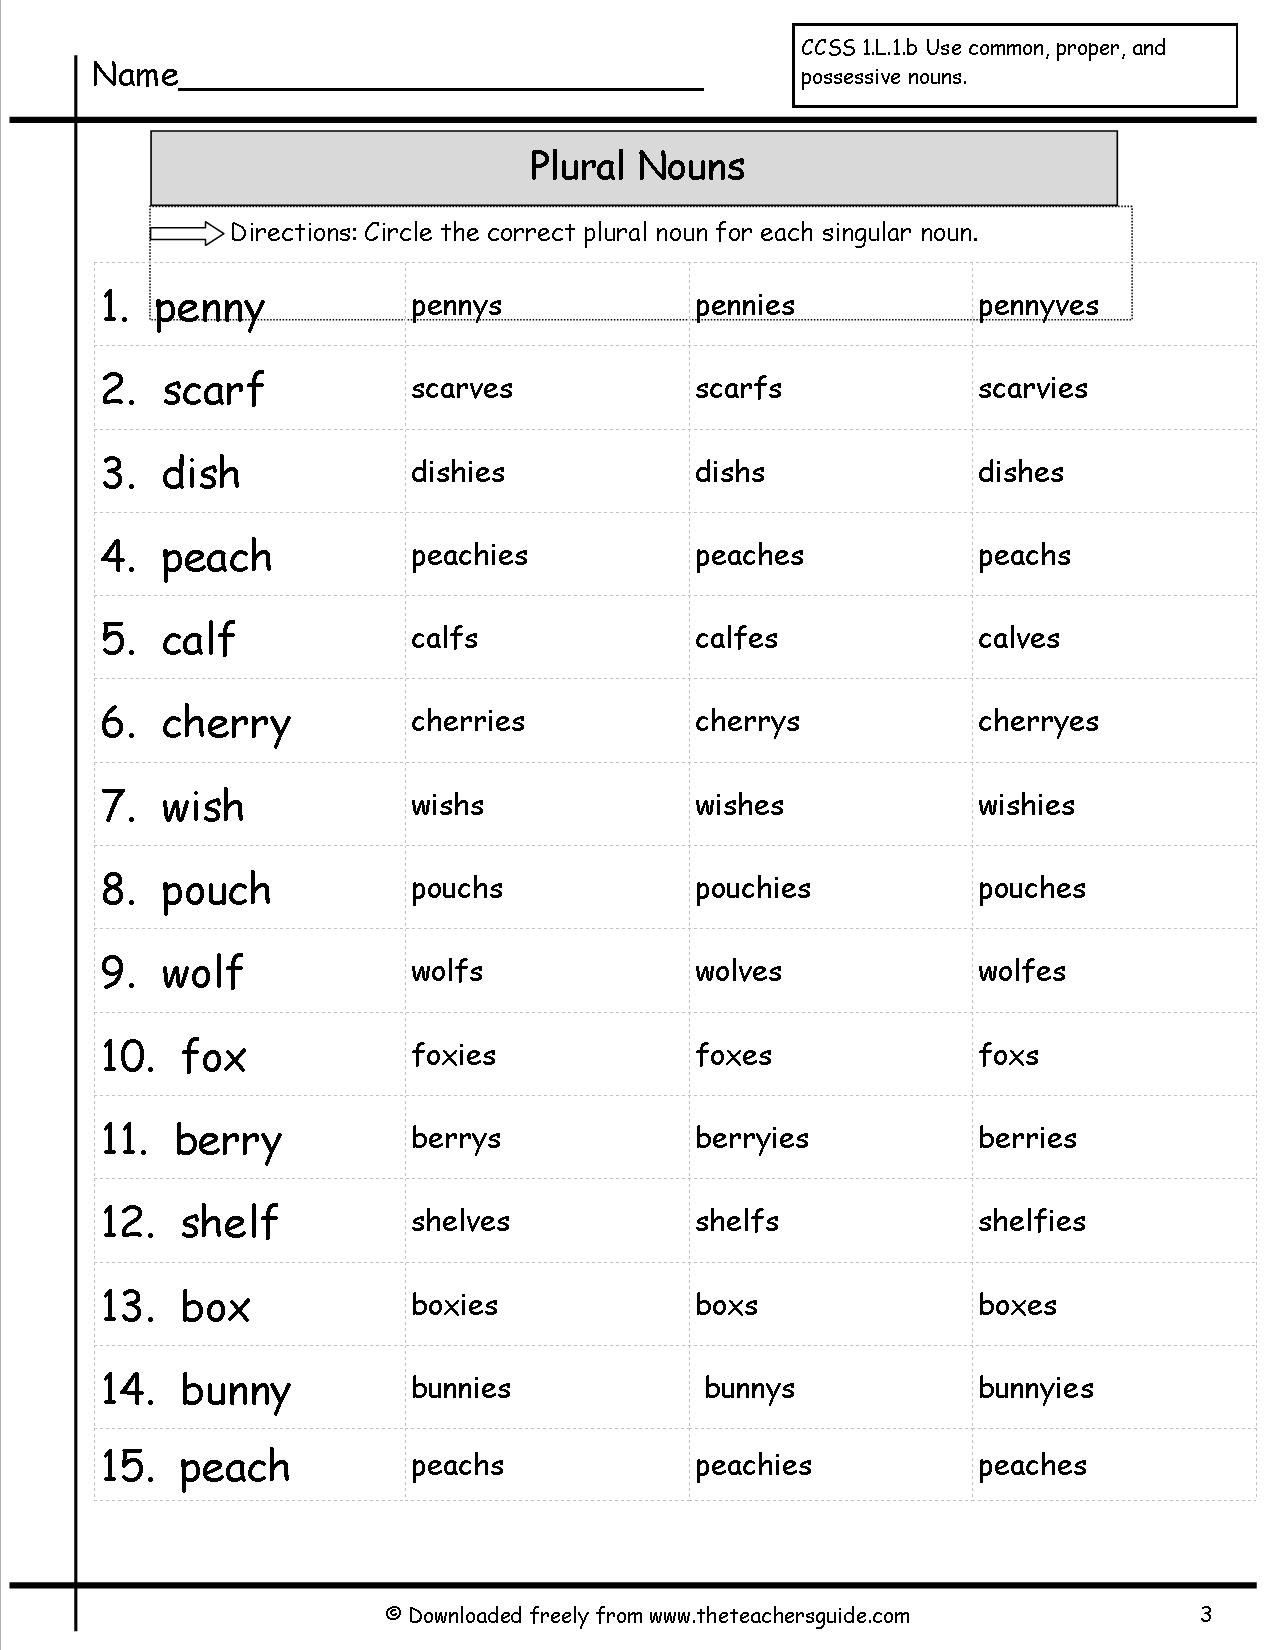 plural-nouns-ending-in-y-worksheet